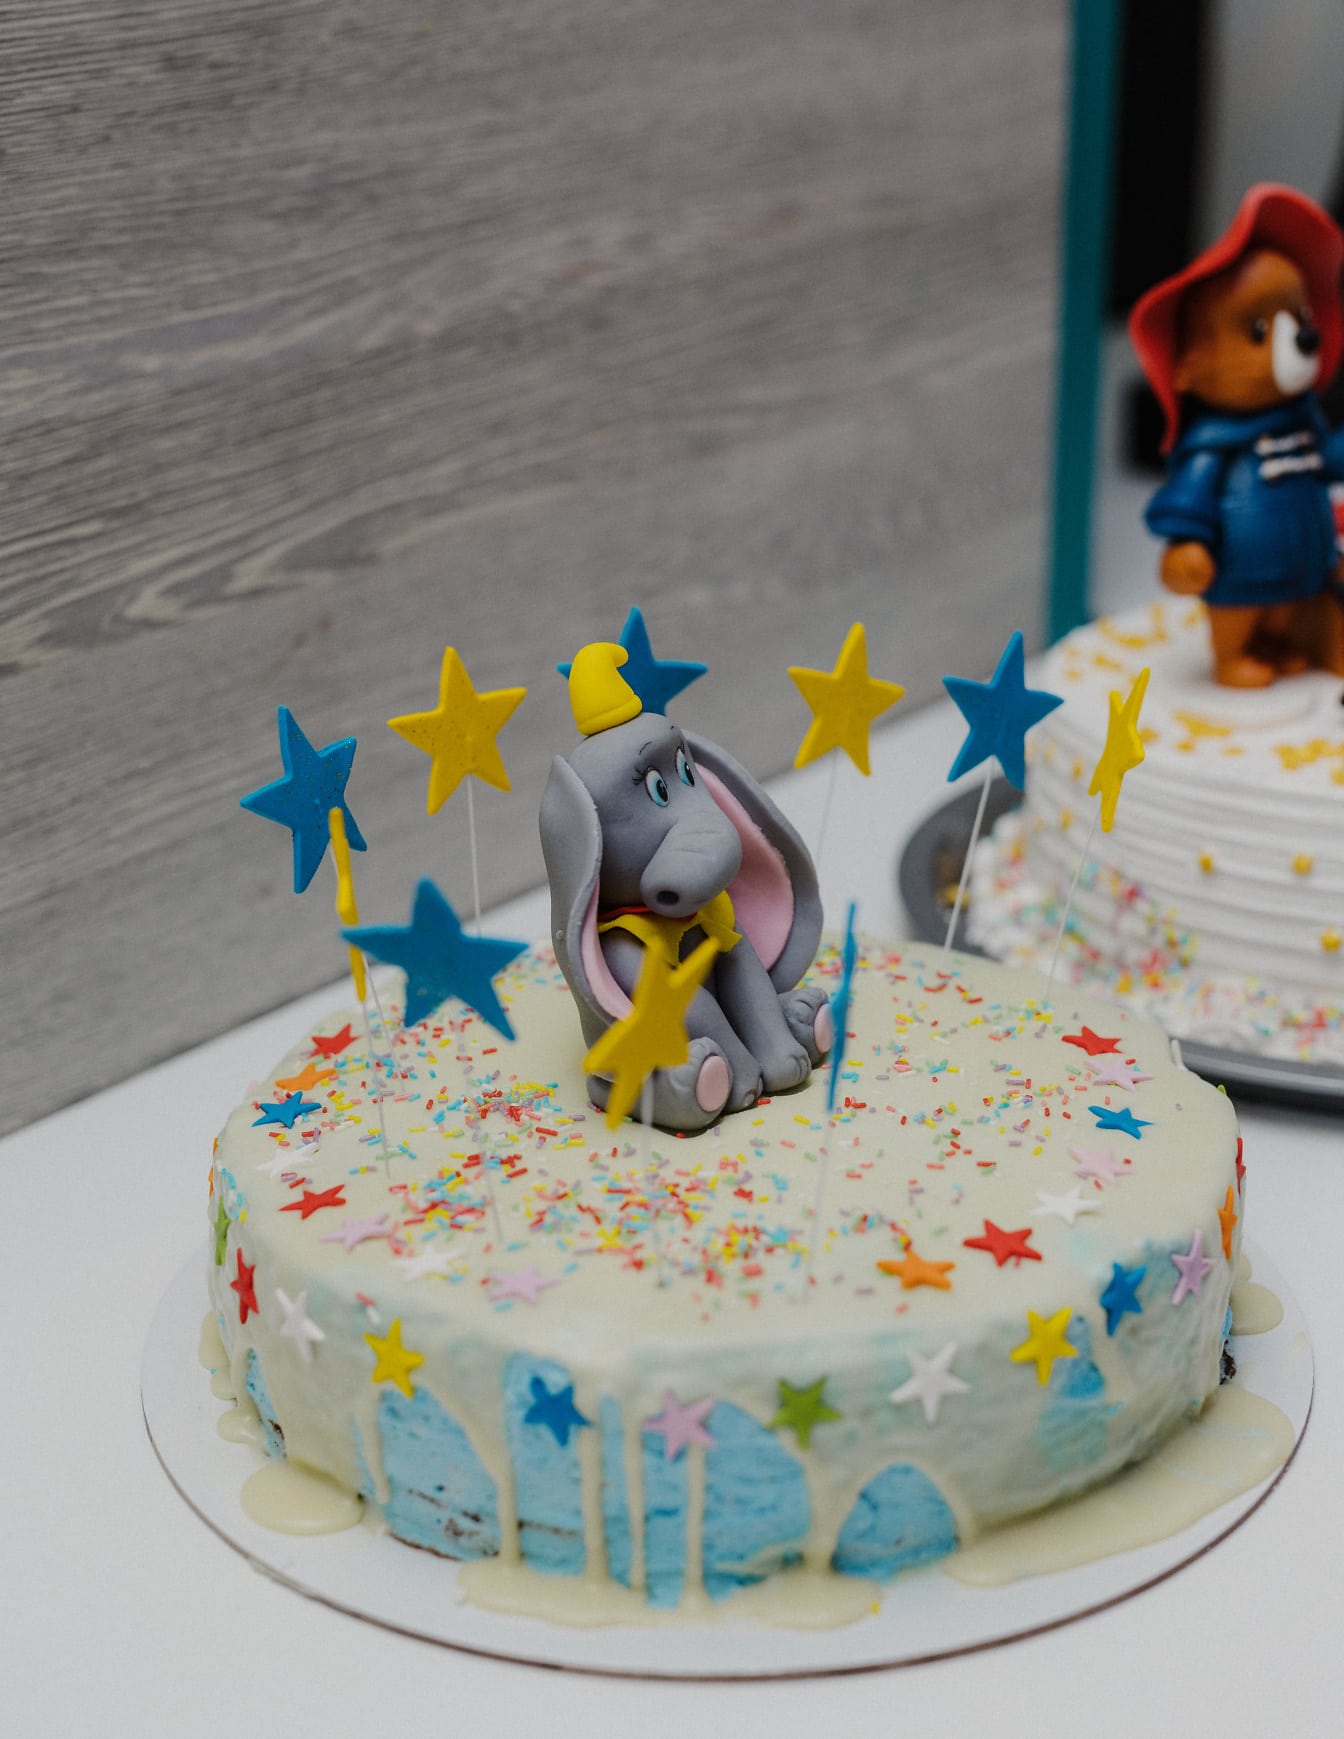 코끼리 장식과 파란색과 노란색 별이 있는 생일 케이크